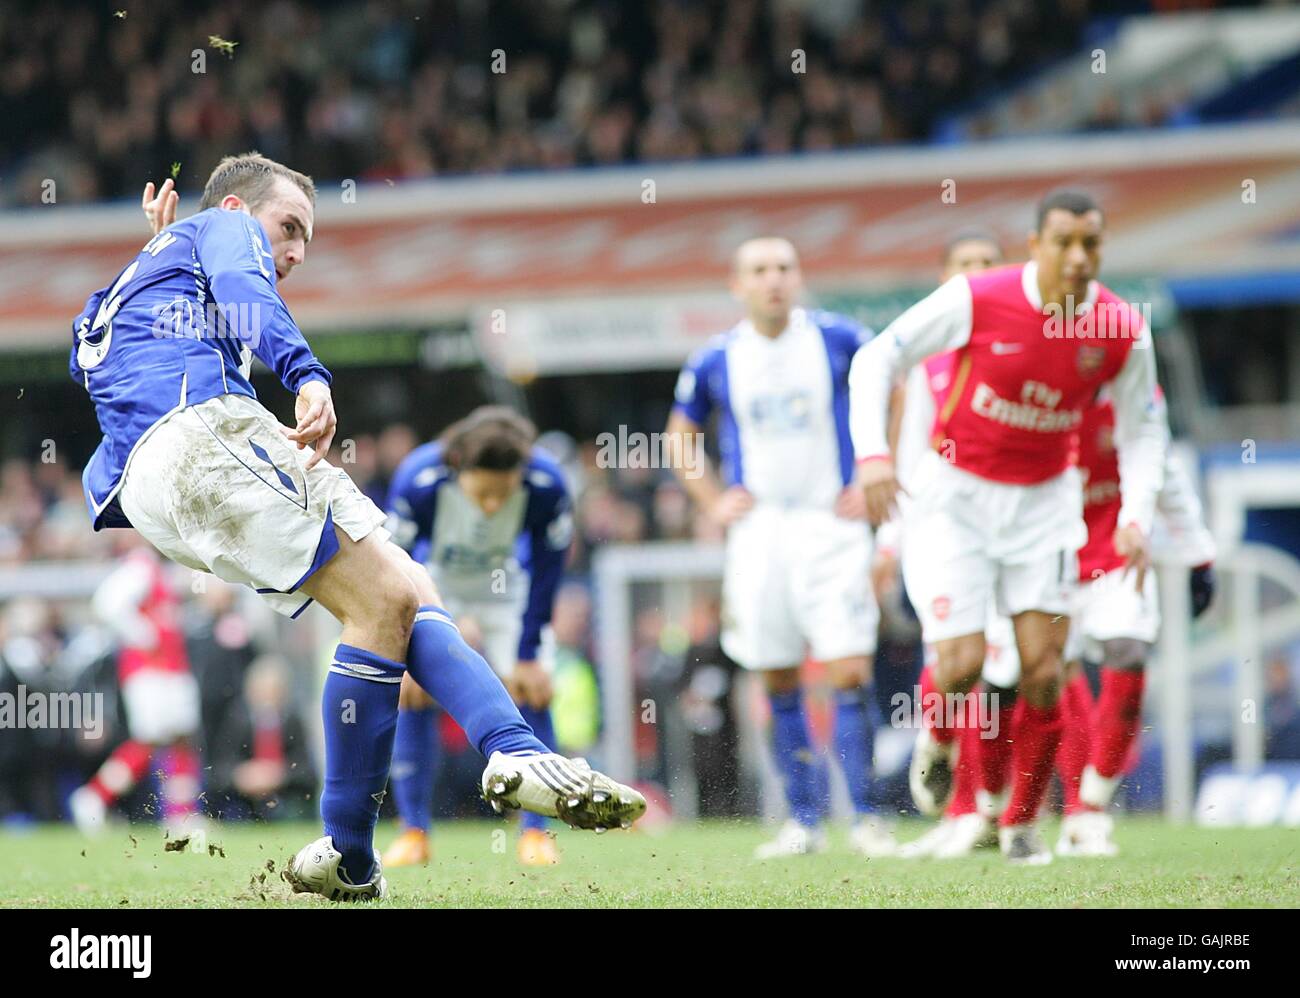 Fußball - Barclays Premier League - Birmingham City / Arsenal - St Andrews. James McFadden von Birmingham City punktet mit dem Elfmeterschießen, um den Ausgleich zu erzielen Stockfoto